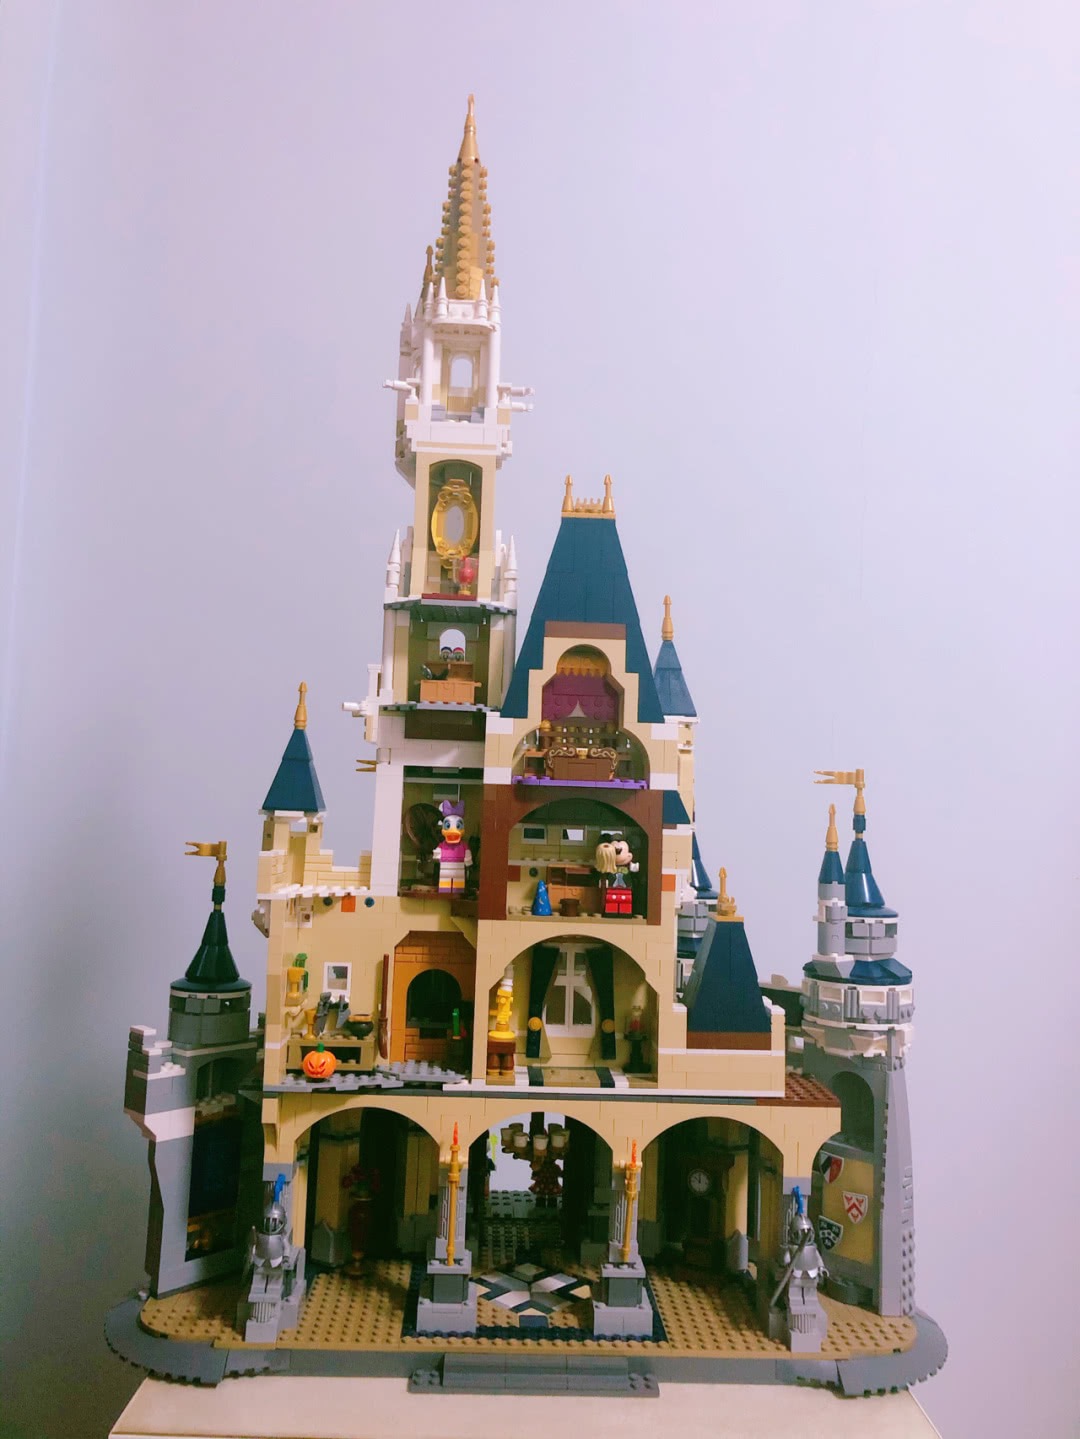 哈利波特城堡 霍格沃茨城堡模型